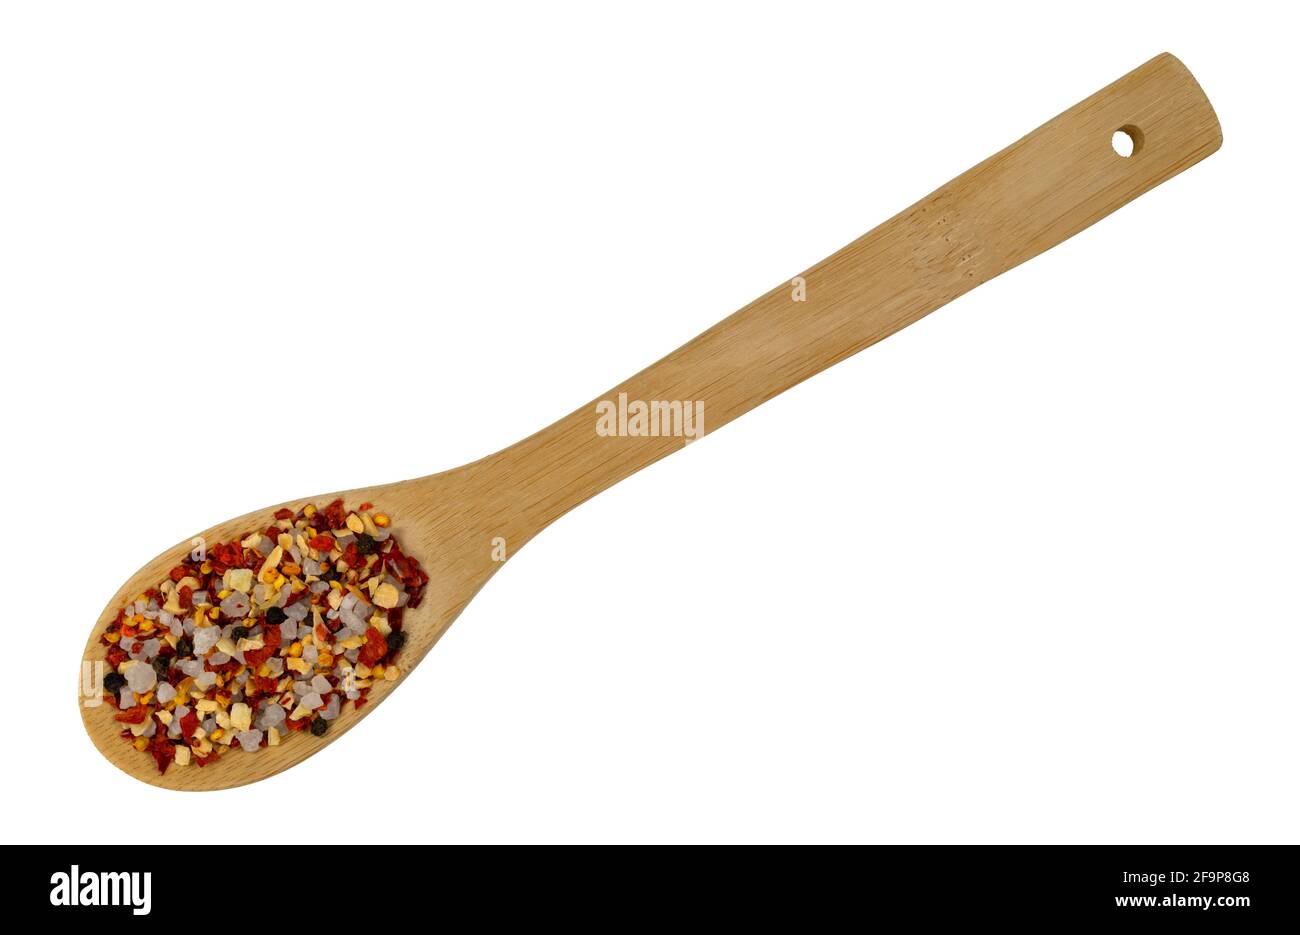 Holzlöffel gefüllt mit Knoblauch und Chili Gewürz isoliert auf einem weißen Hintergrund. Stockfoto